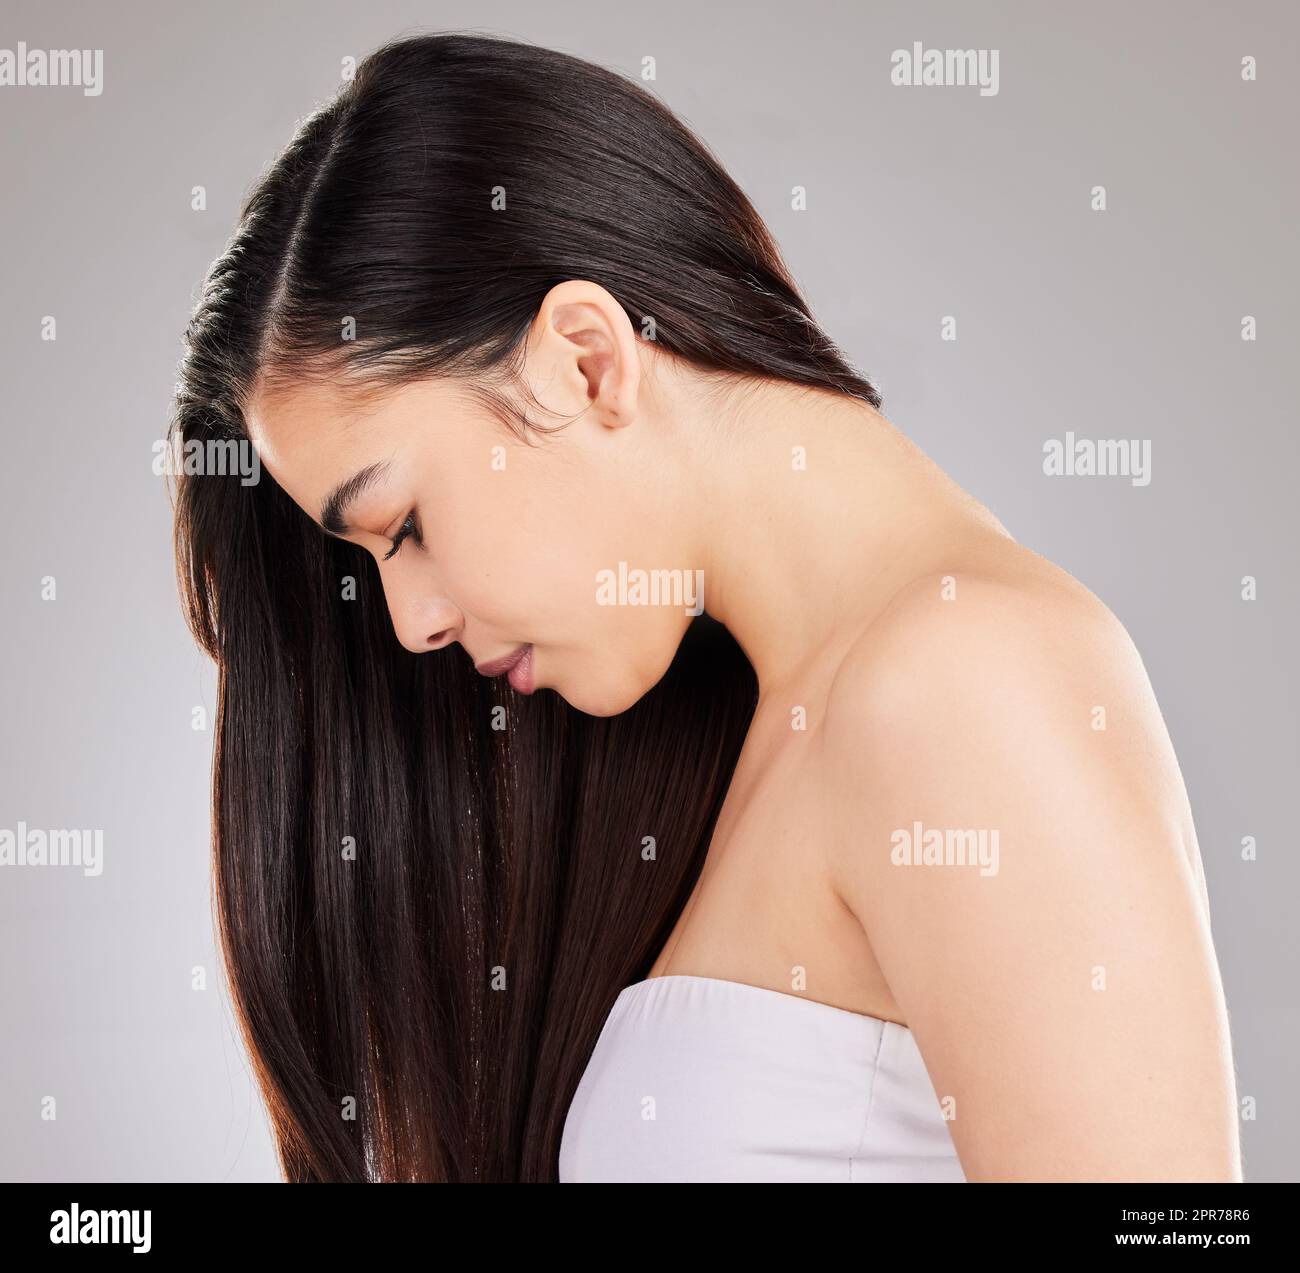 Kümmern Sie sich um Ihr Haar. Studioaufnahme einer jungen Frau mit schönen langen Haaren. Stockfoto